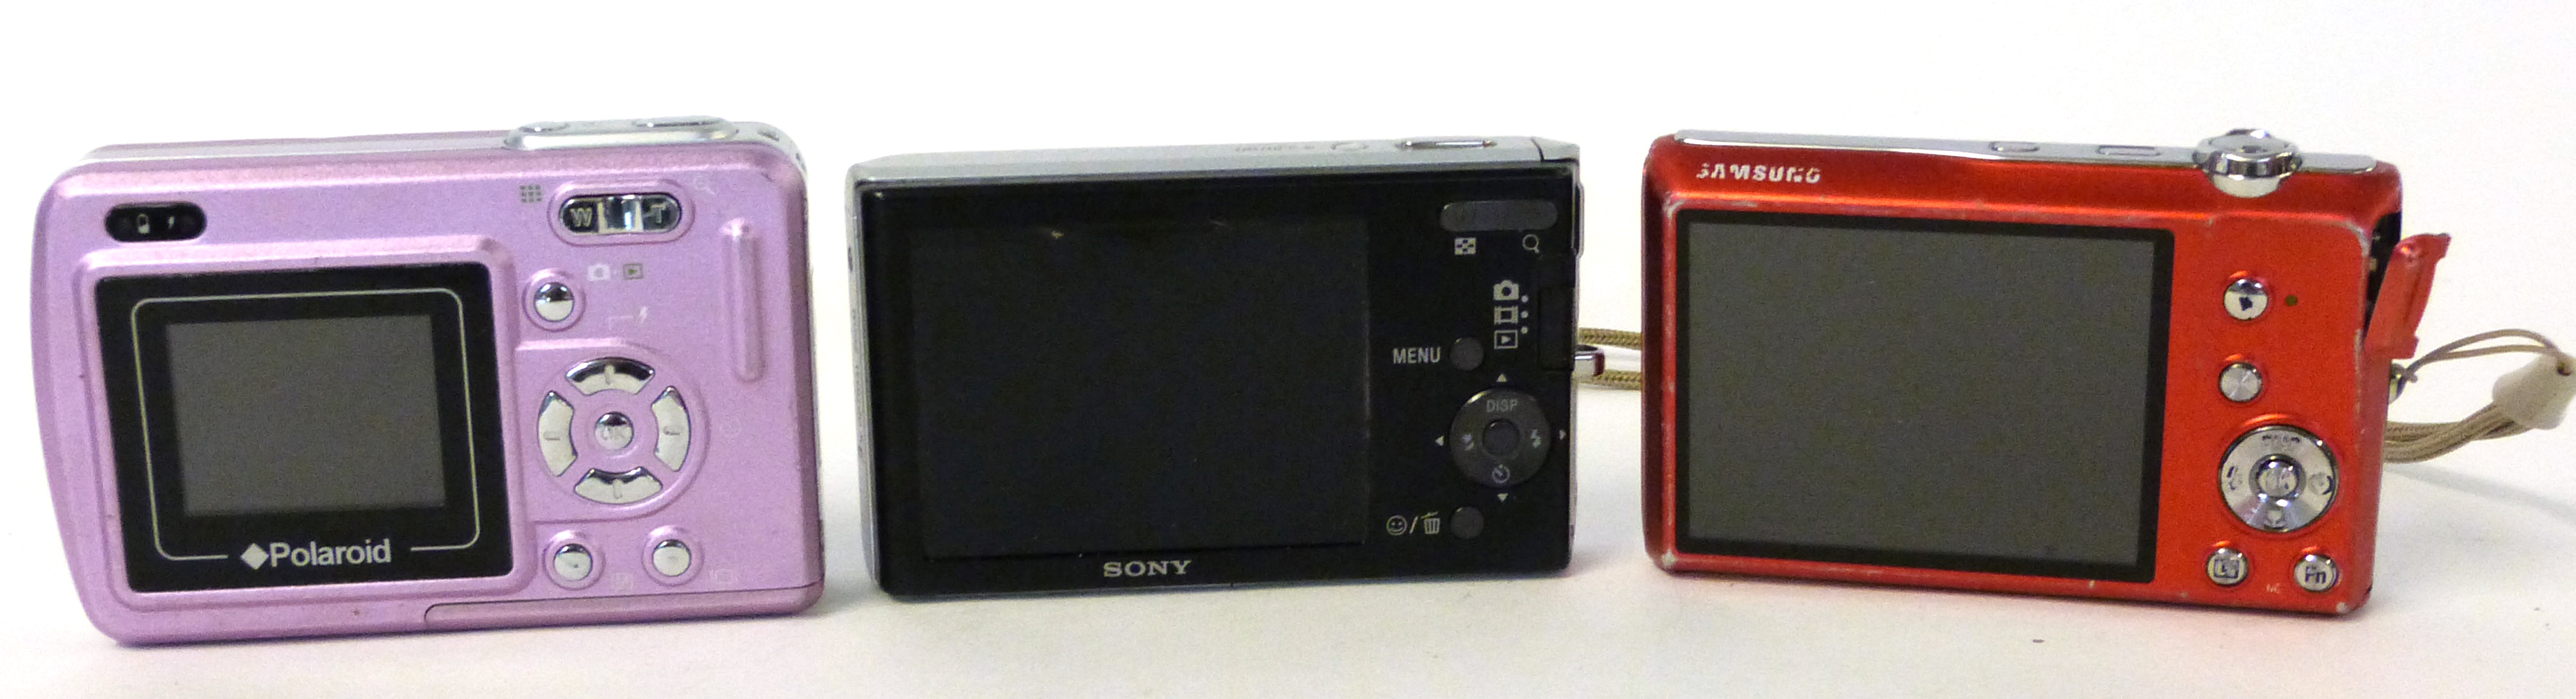 Samsung ST61 digital camera, a Sony DSC-W180 digital camera with a Polaroid A300 digital camera - Image 3 of 3